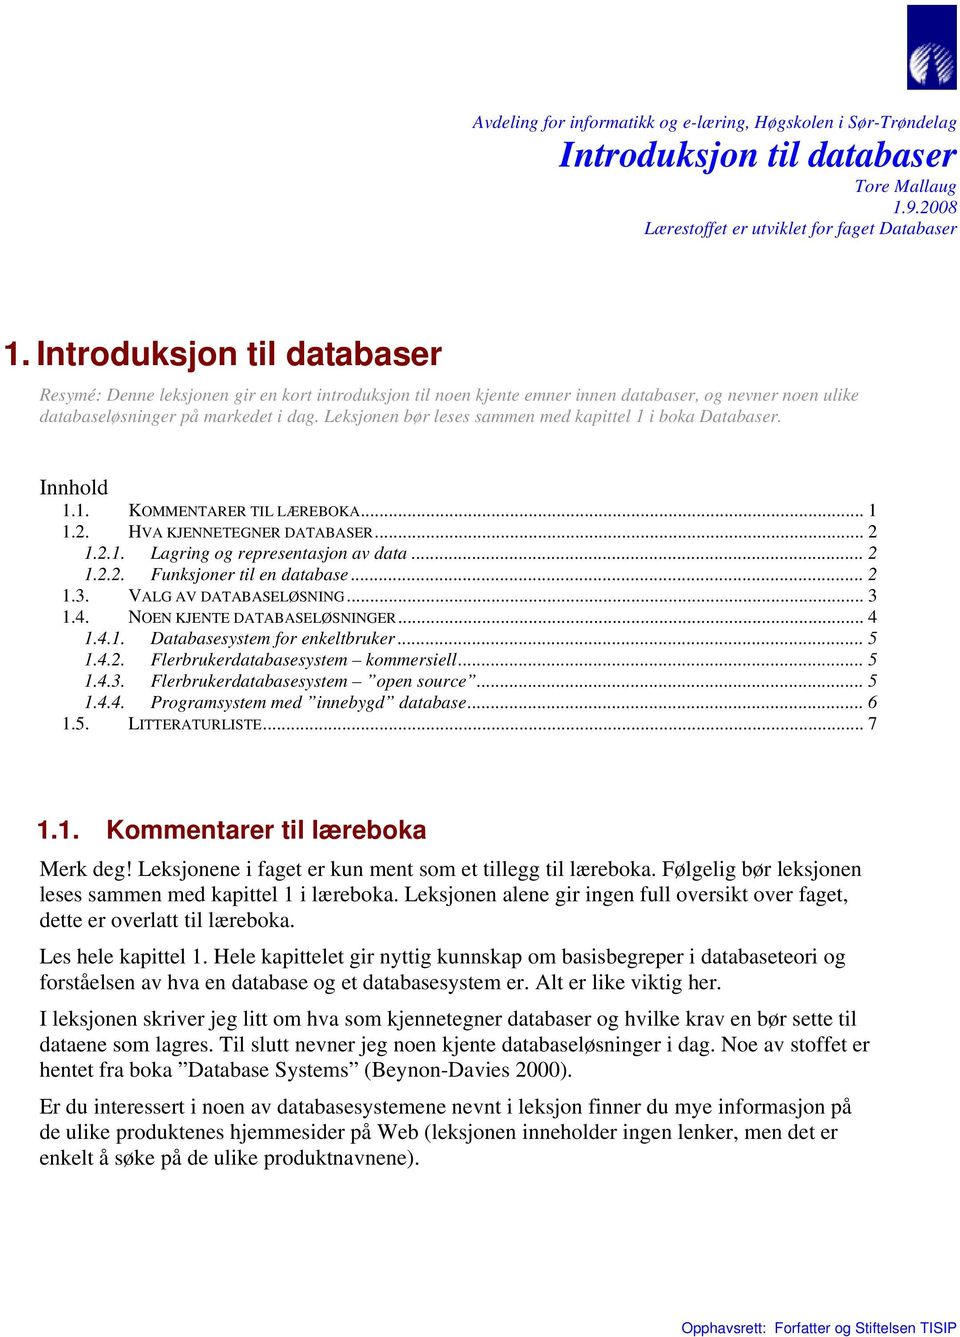 Leksjonen bør leses sammen med kapittel 1 i boka Databaser. Innhold 1.1. KOMMENTARER TIL LÆREBOKA... 1 1.2. HVA KJENNETEGNER DATABASER... 2 1.2.1. Lagring og representasjon av data... 2 1.2.2. Funksjoner til en database.